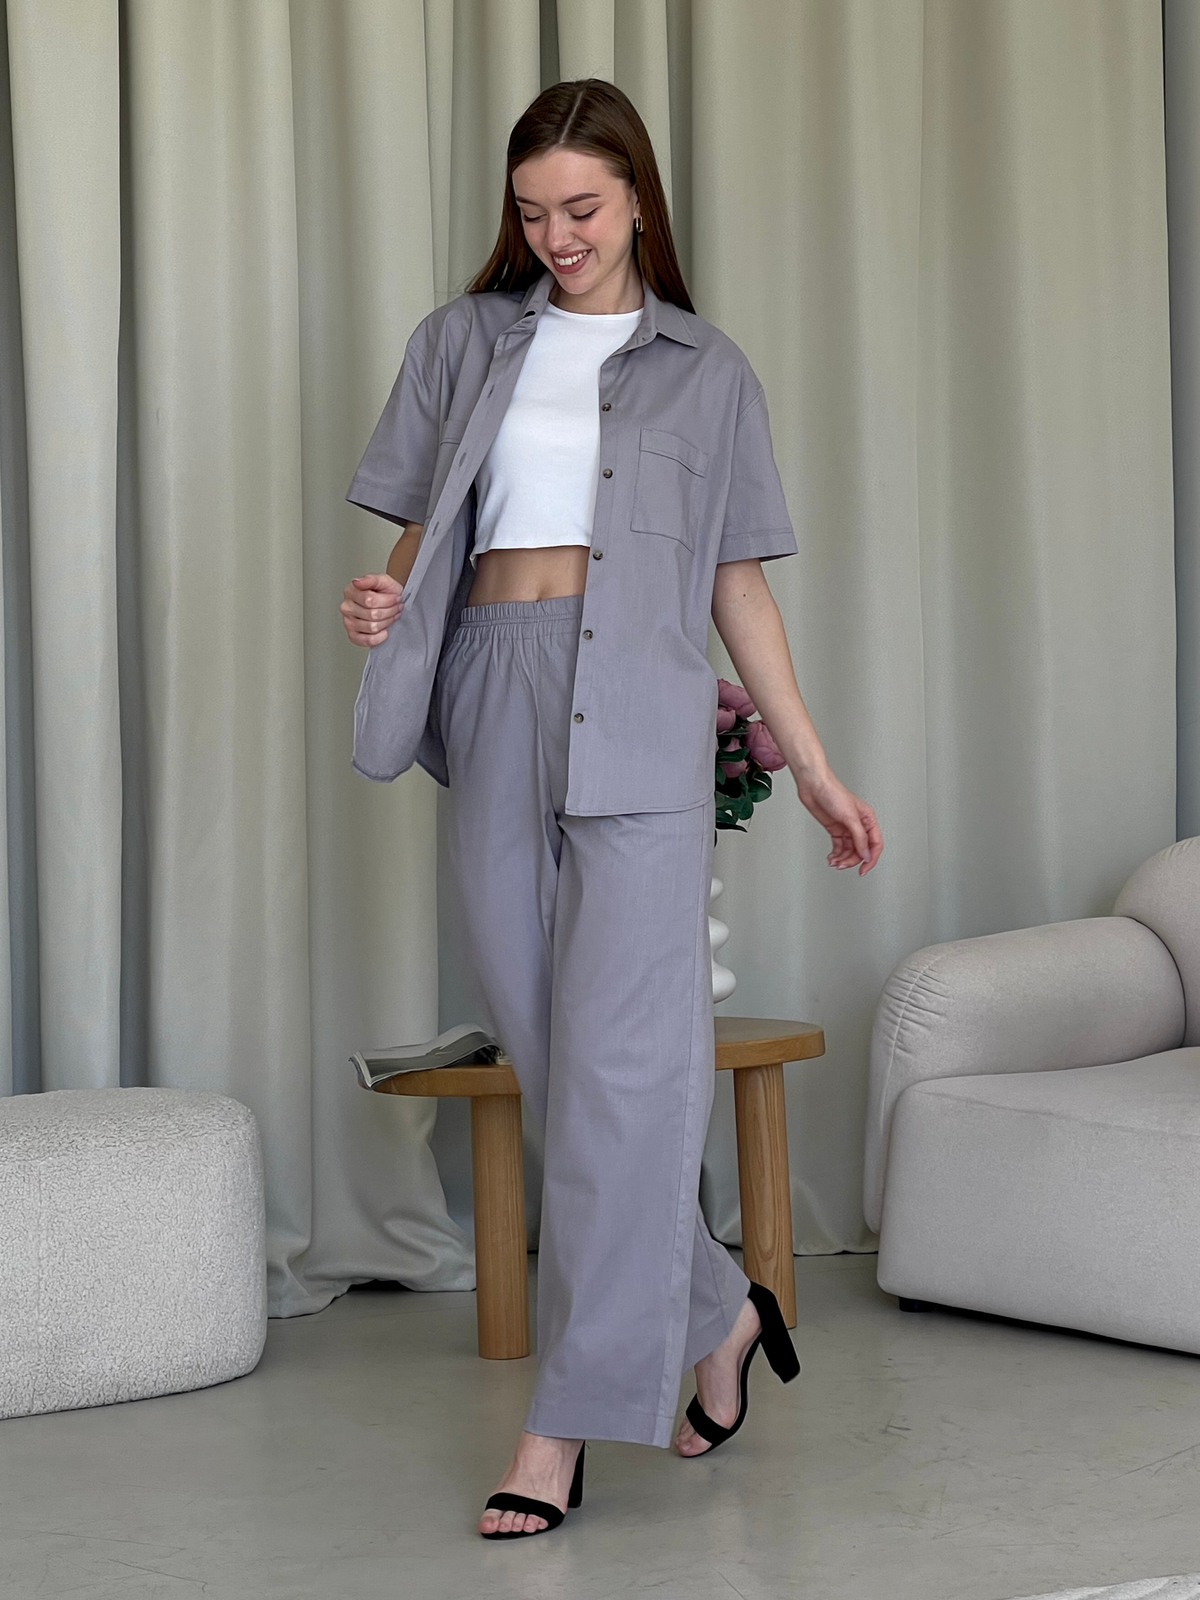 Купить Льняной костюм с штанами палаццо и рубашкой серый Лорен 100001203 размер 42-44 (S-M) в интернет-магазине